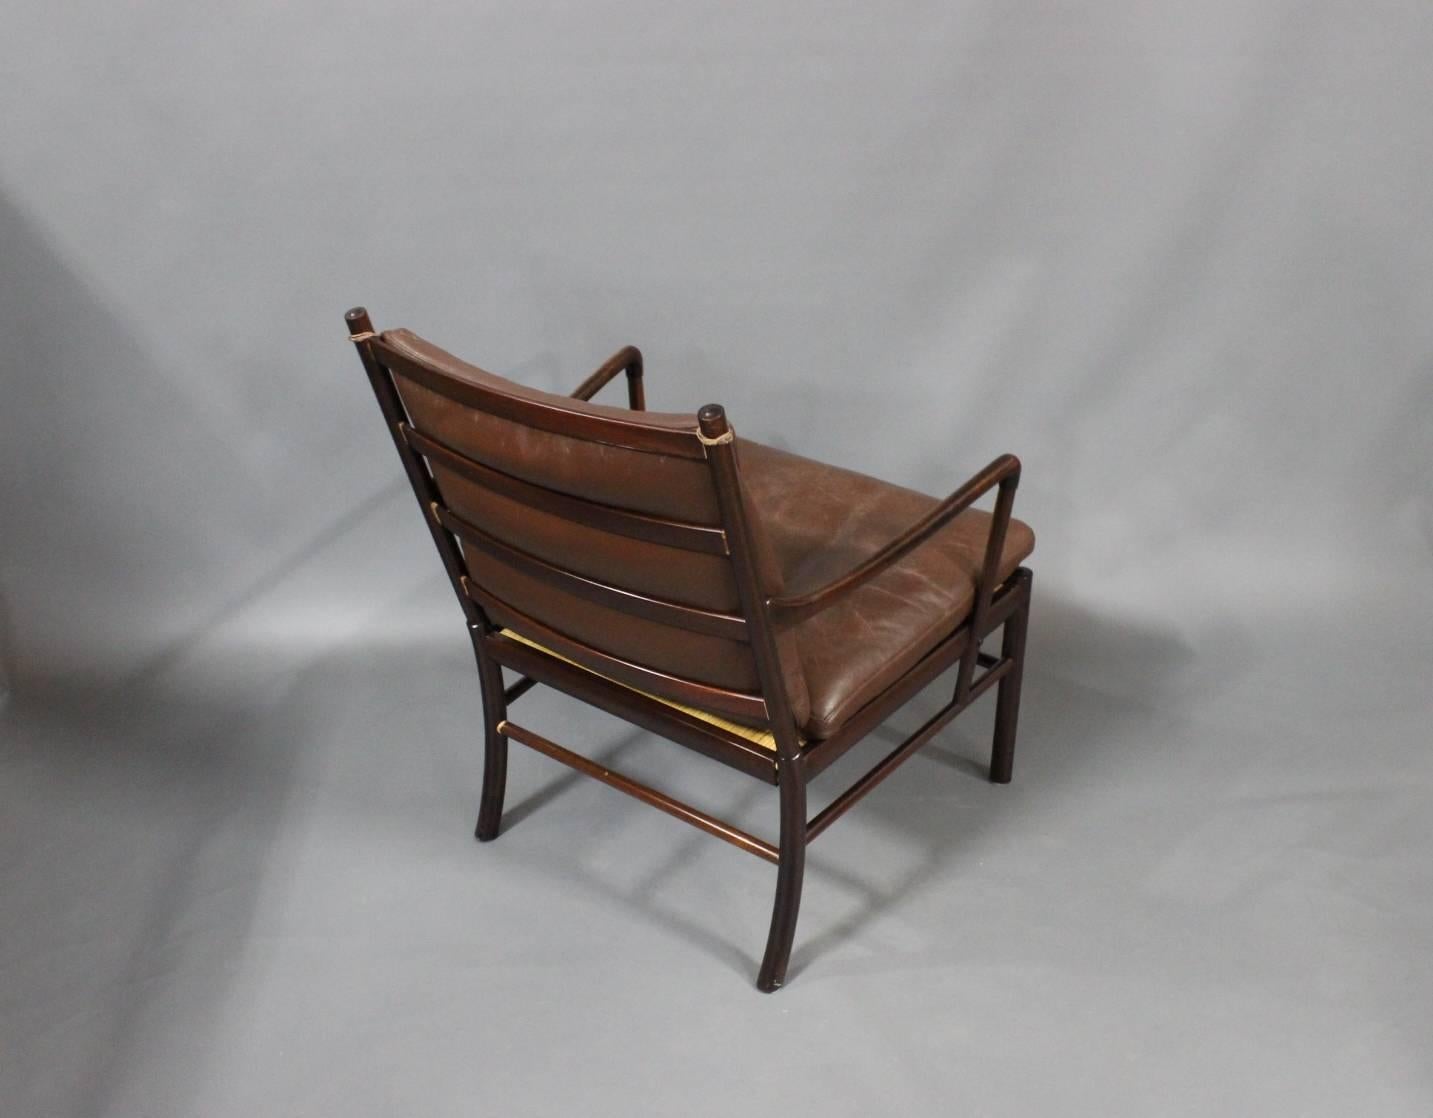 Scandinavian Modern Colonial Chair, Model PJ 149, Designed by Ole Wanscher, 1949